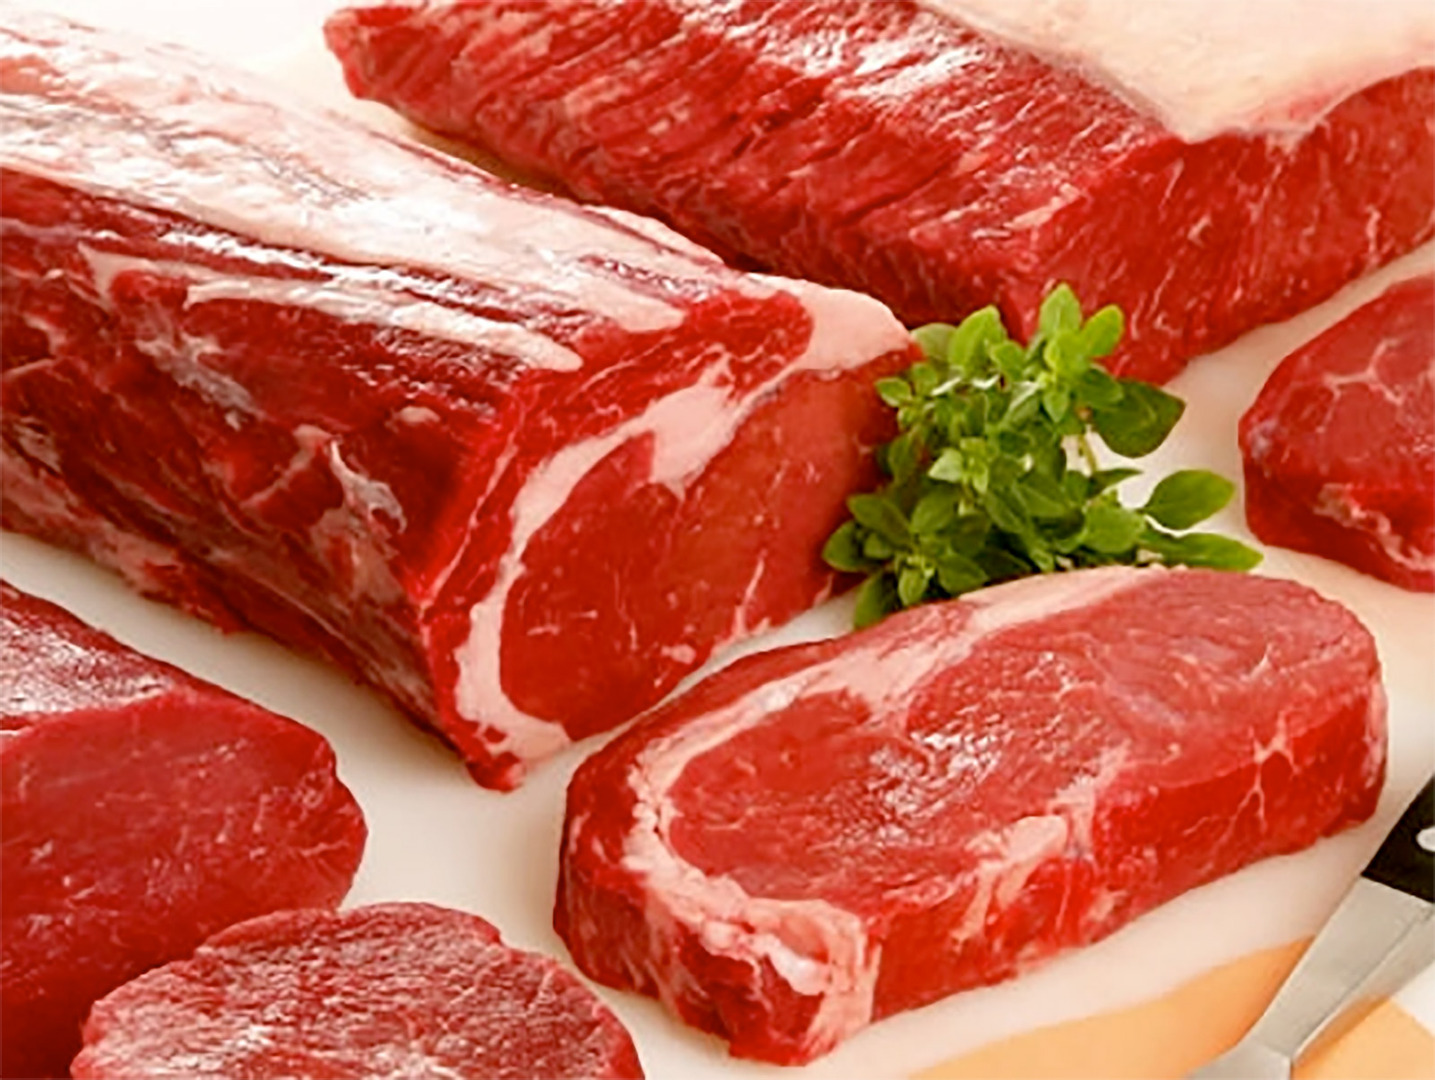 دراسة تربط بين الإفراط في استهلاك اللحوم الحمراء وزيادة خطر الوفاة